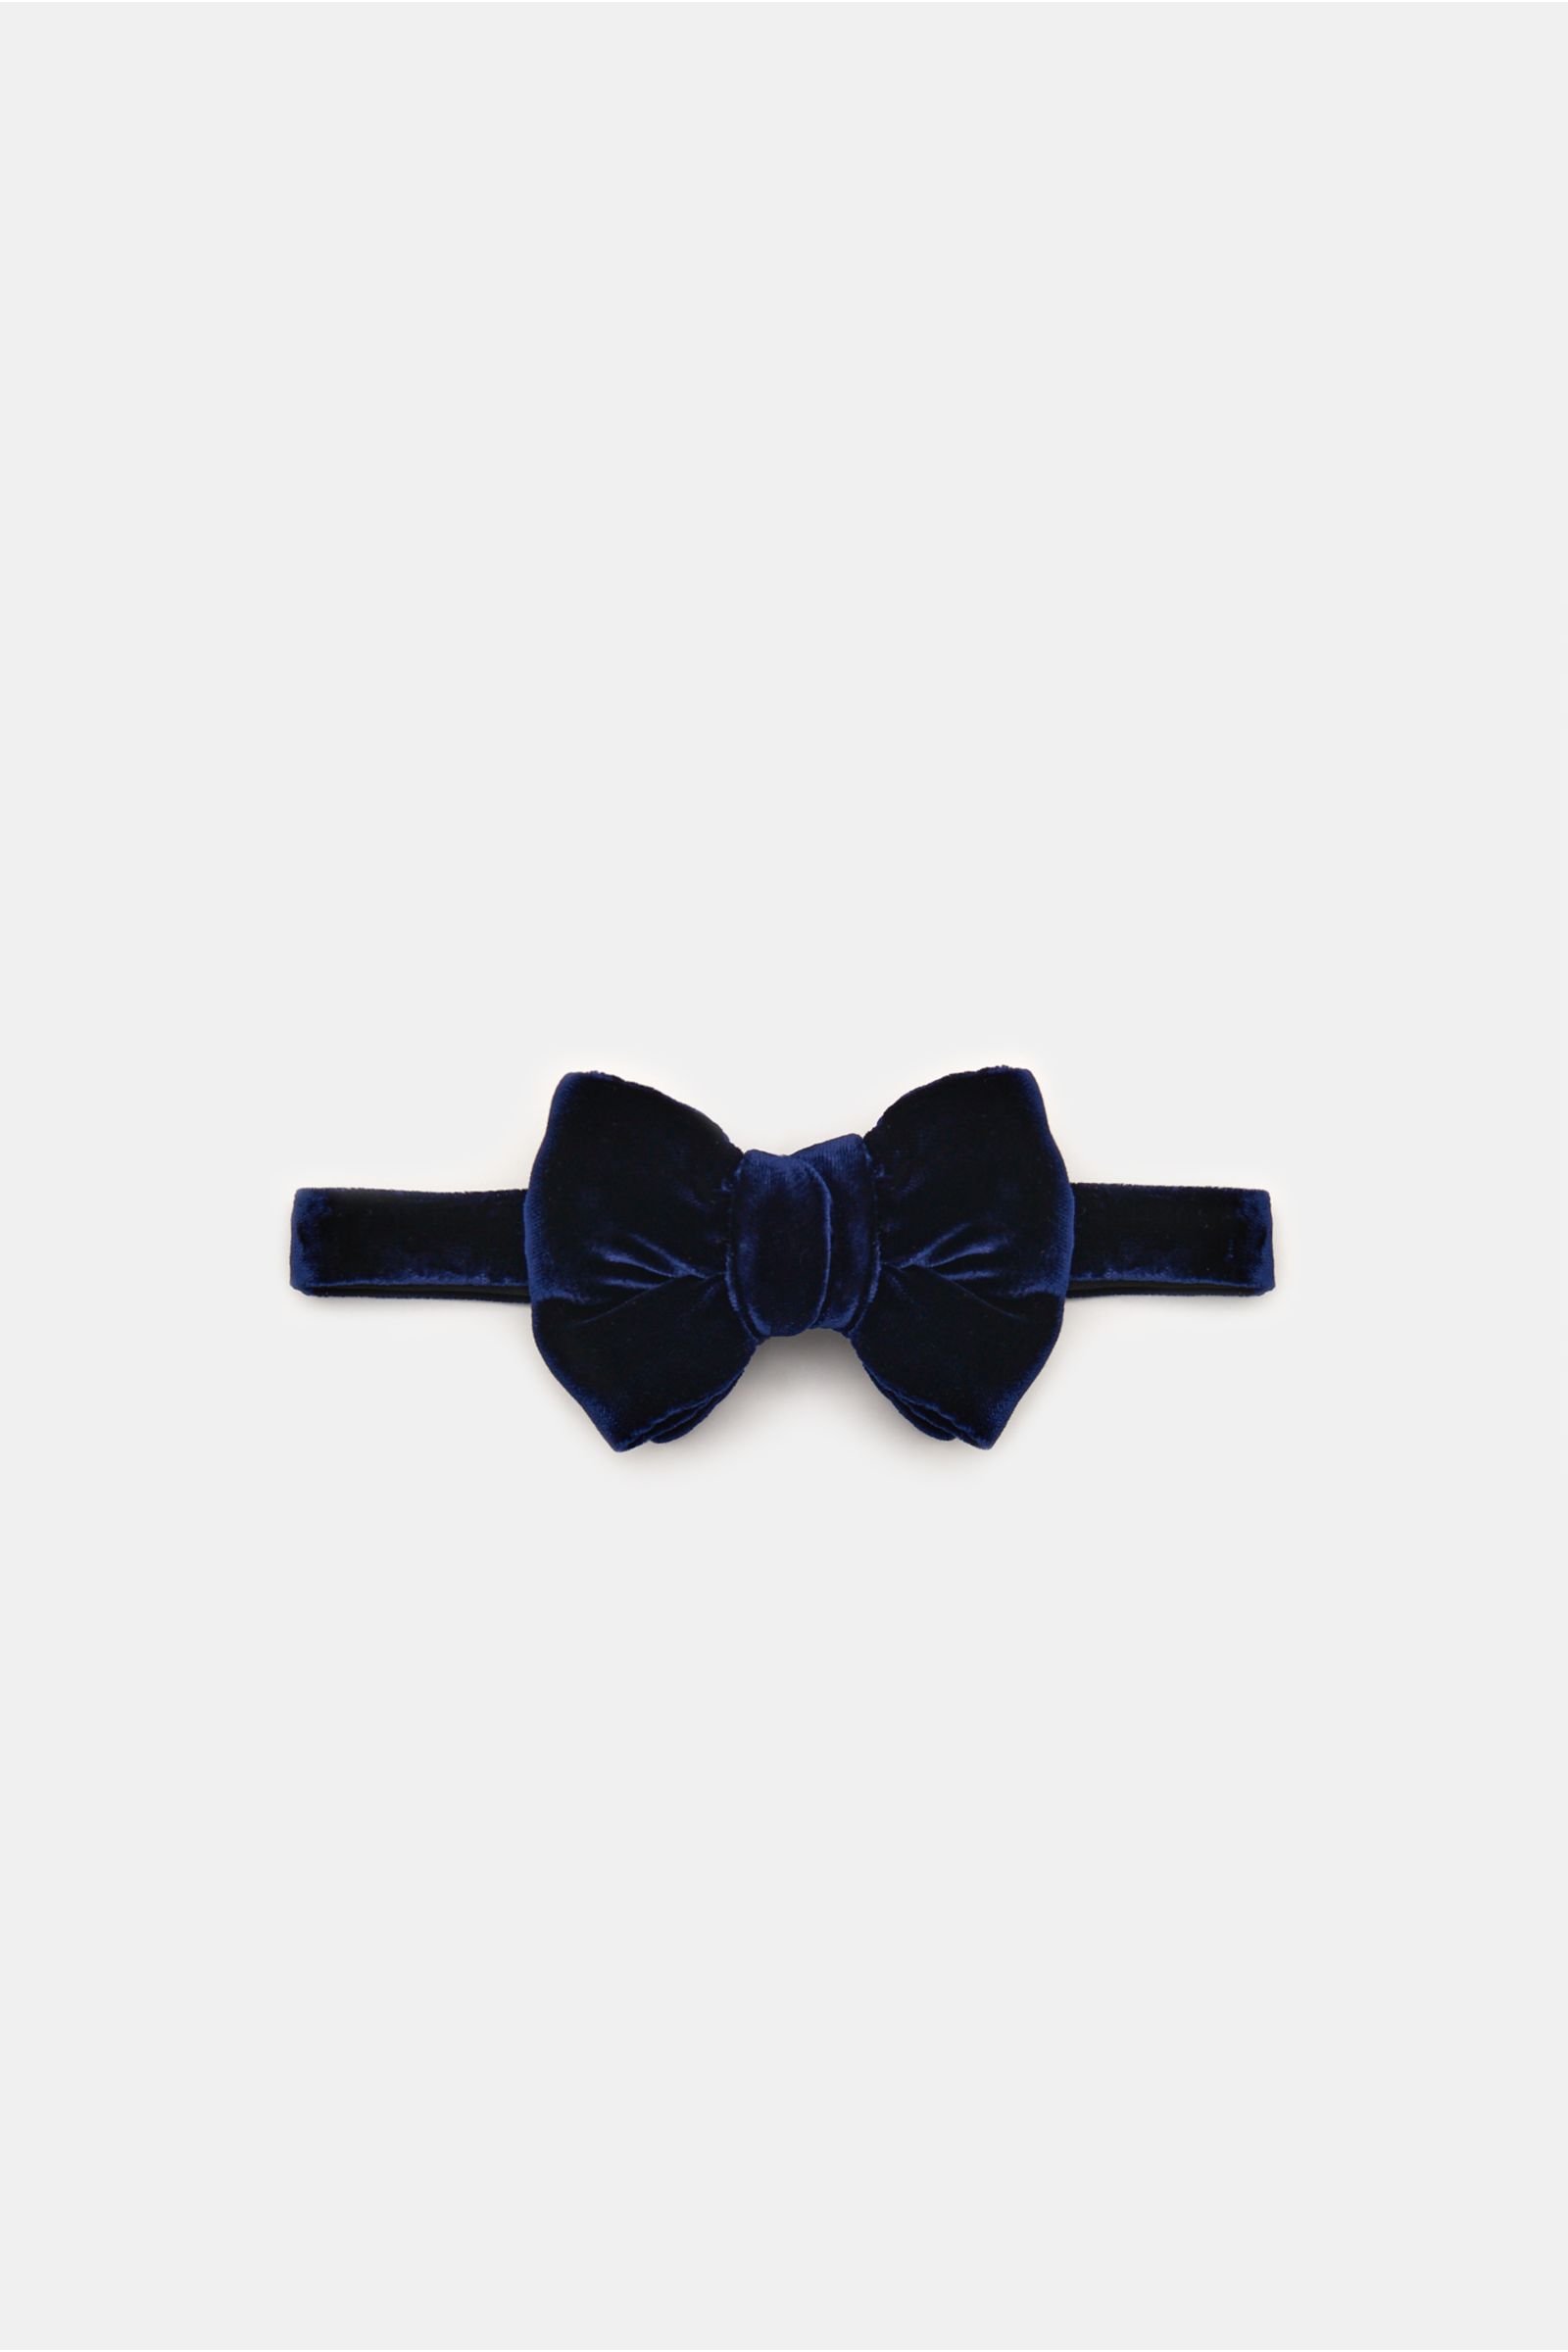 Velvet bow tie dark blue